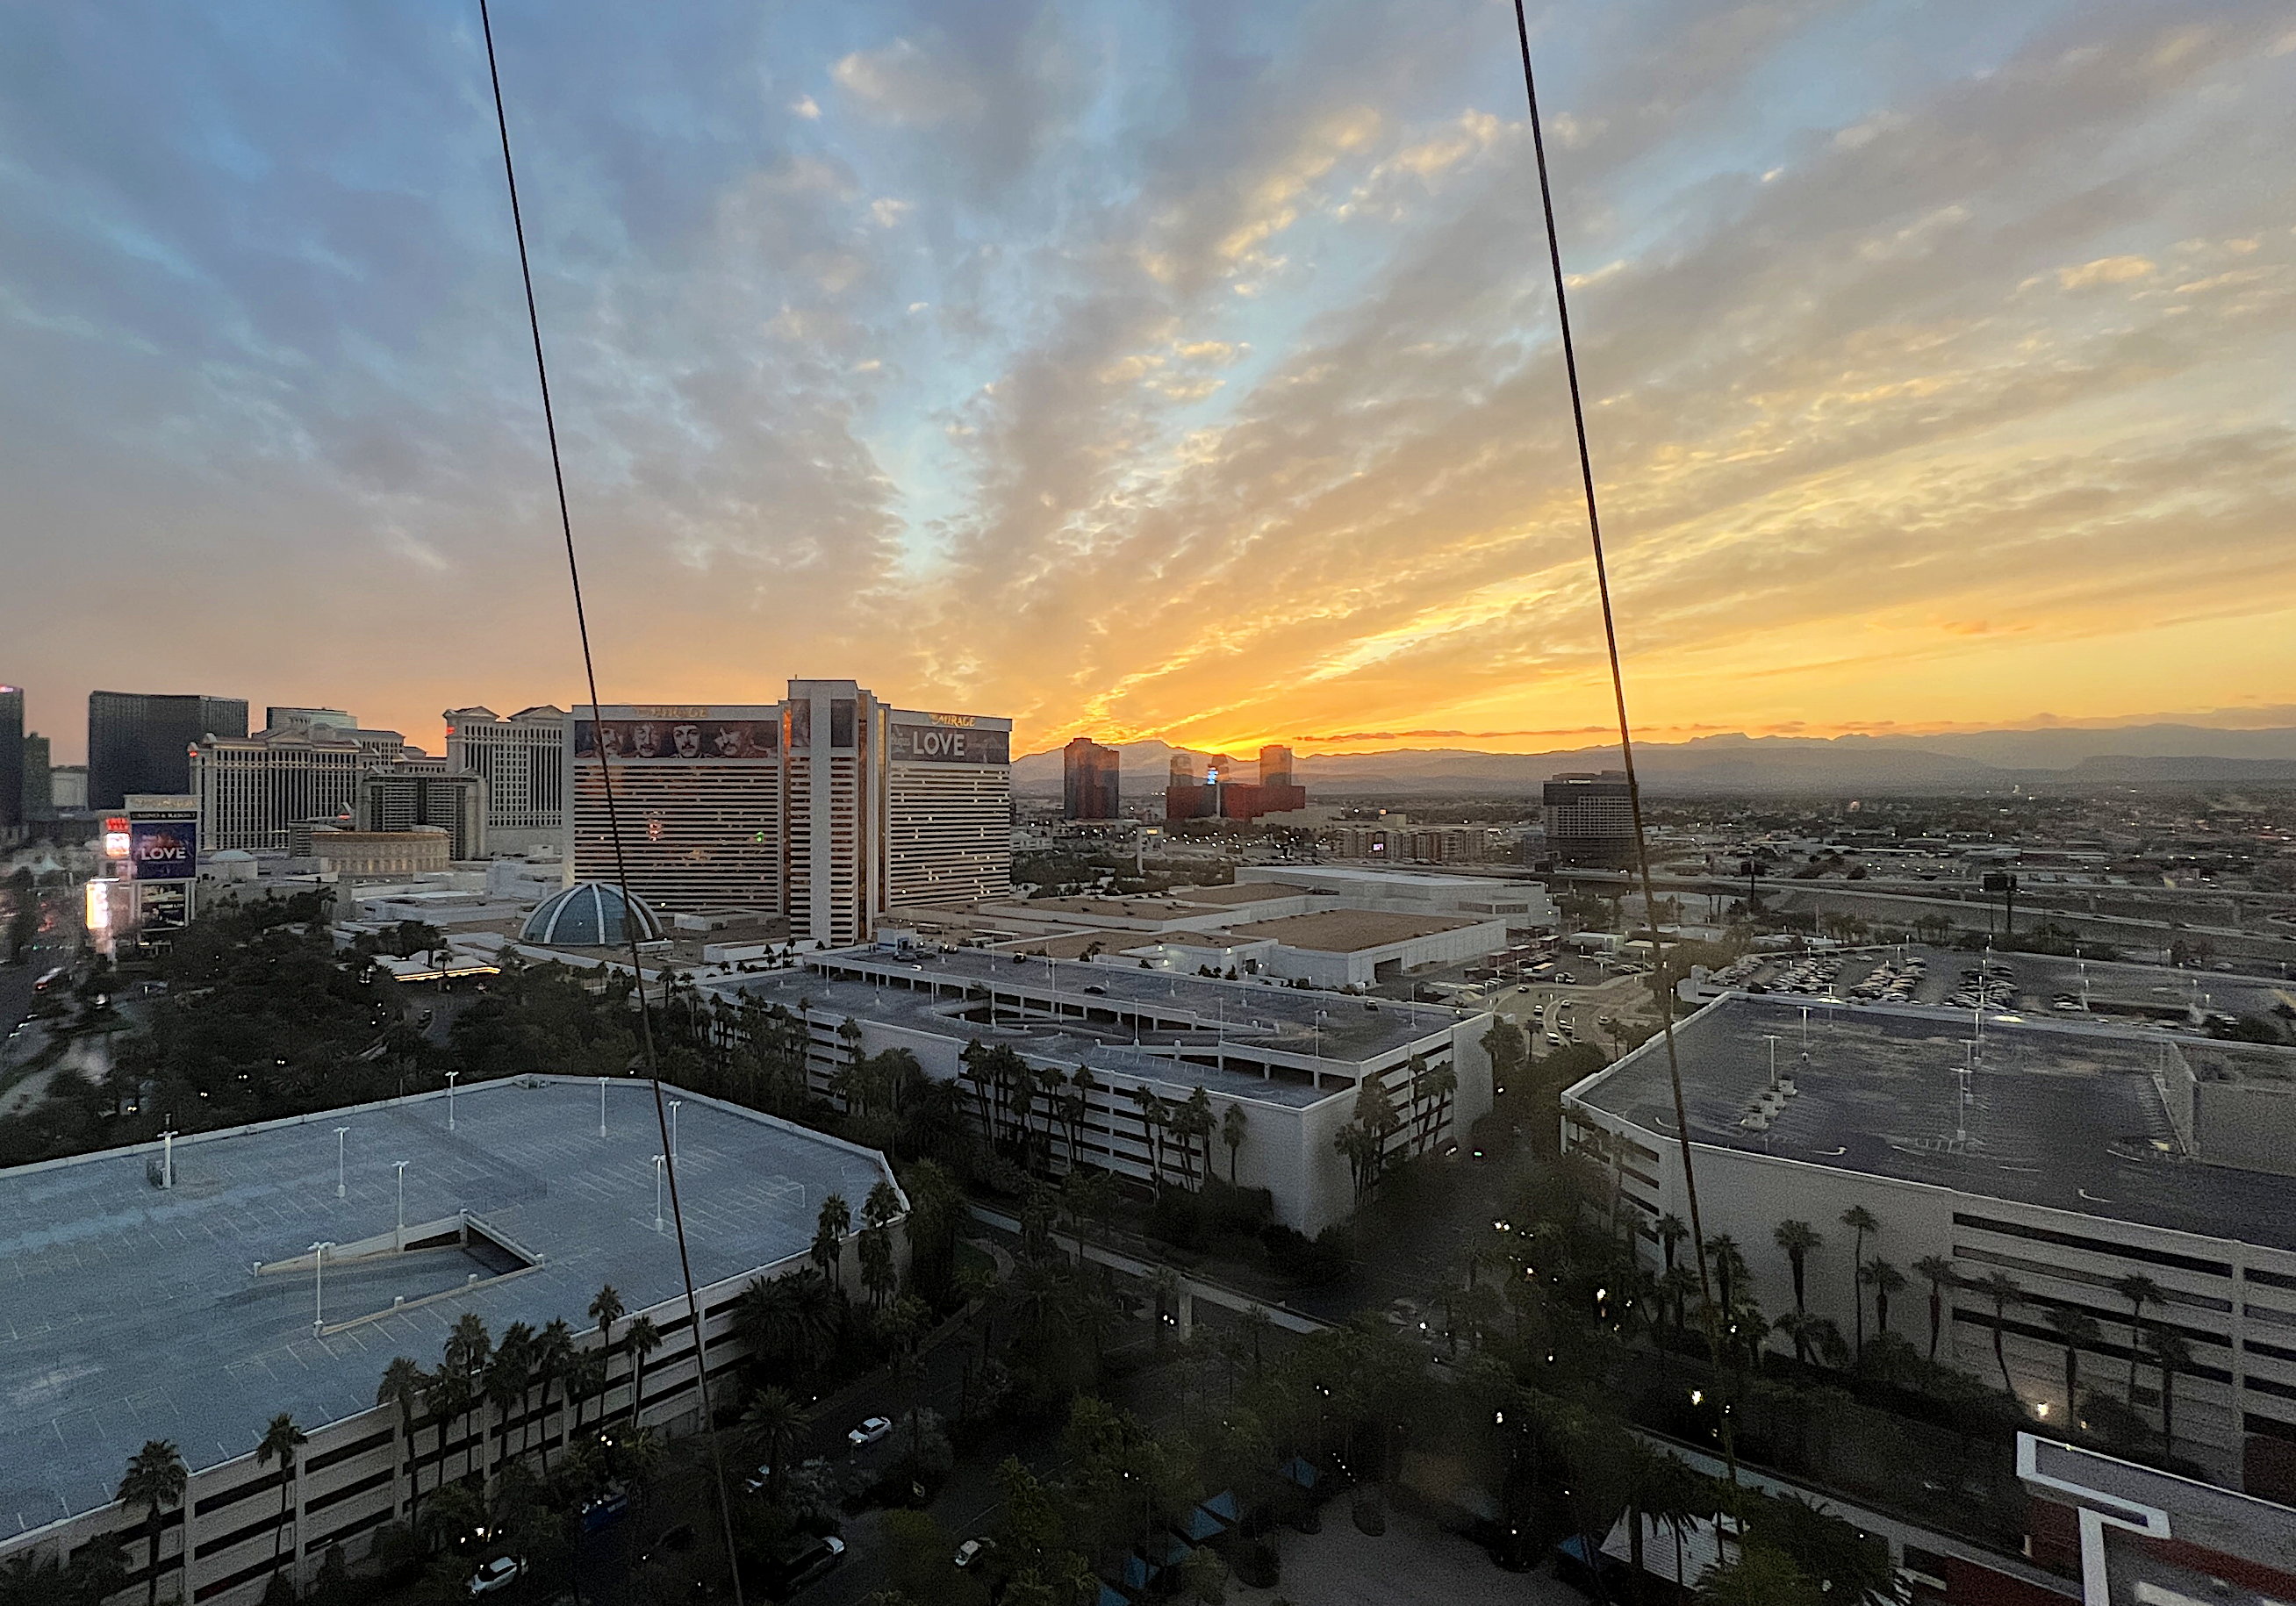 Noch einmal der Sonnenuntergang beim Blick aus dem Hotelfenster in Las Vegas in Richtung Westen. Der Horizont leuchtet schwefel- oder goldgelb, was besser gefällt.